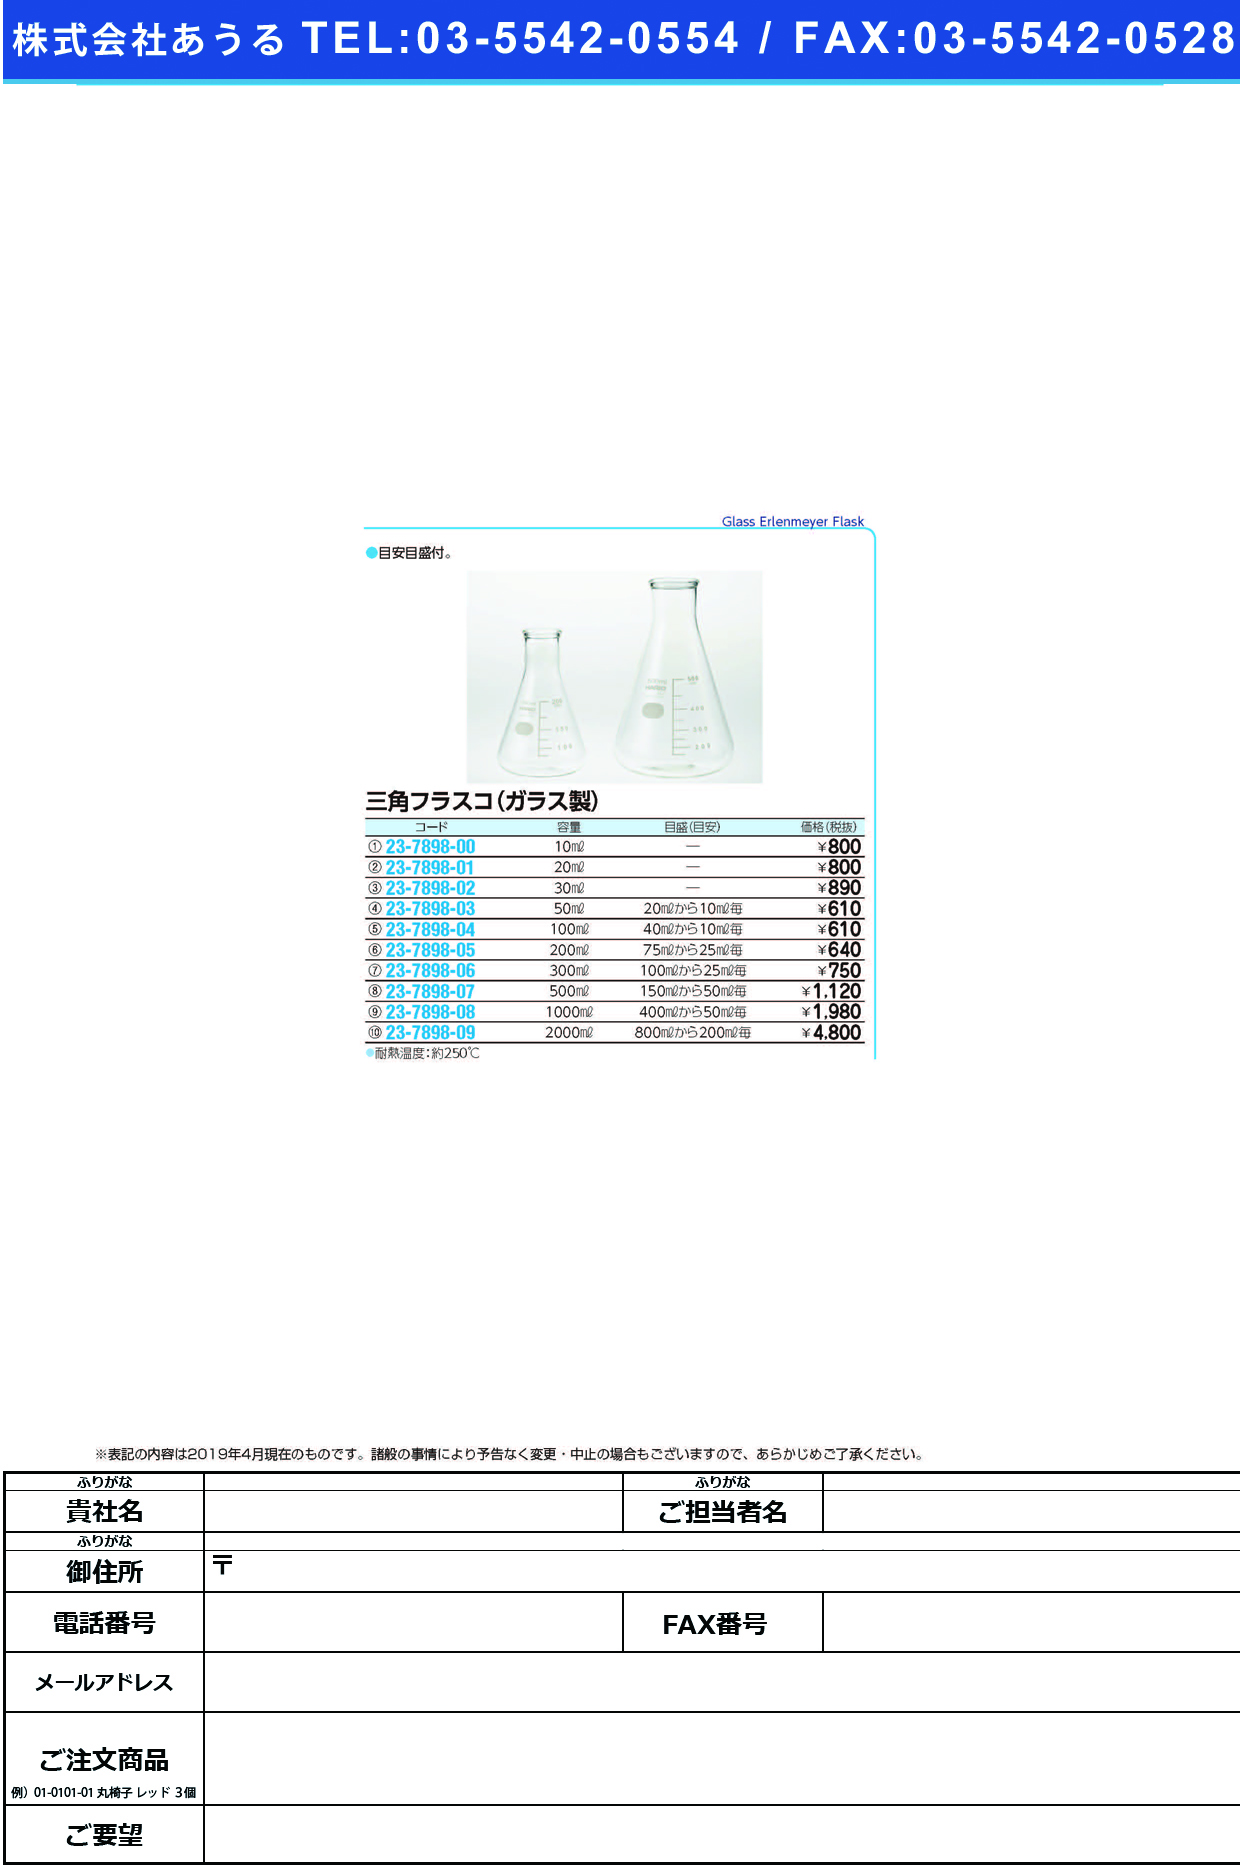 (23-7898-00)三角フラスコ（ガラス製） 10ML ｻﾝｶｸﾌﾗｽｺ(ｶﾞﾗｽｾｲ)【1個単位】【2019年カタログ商品】